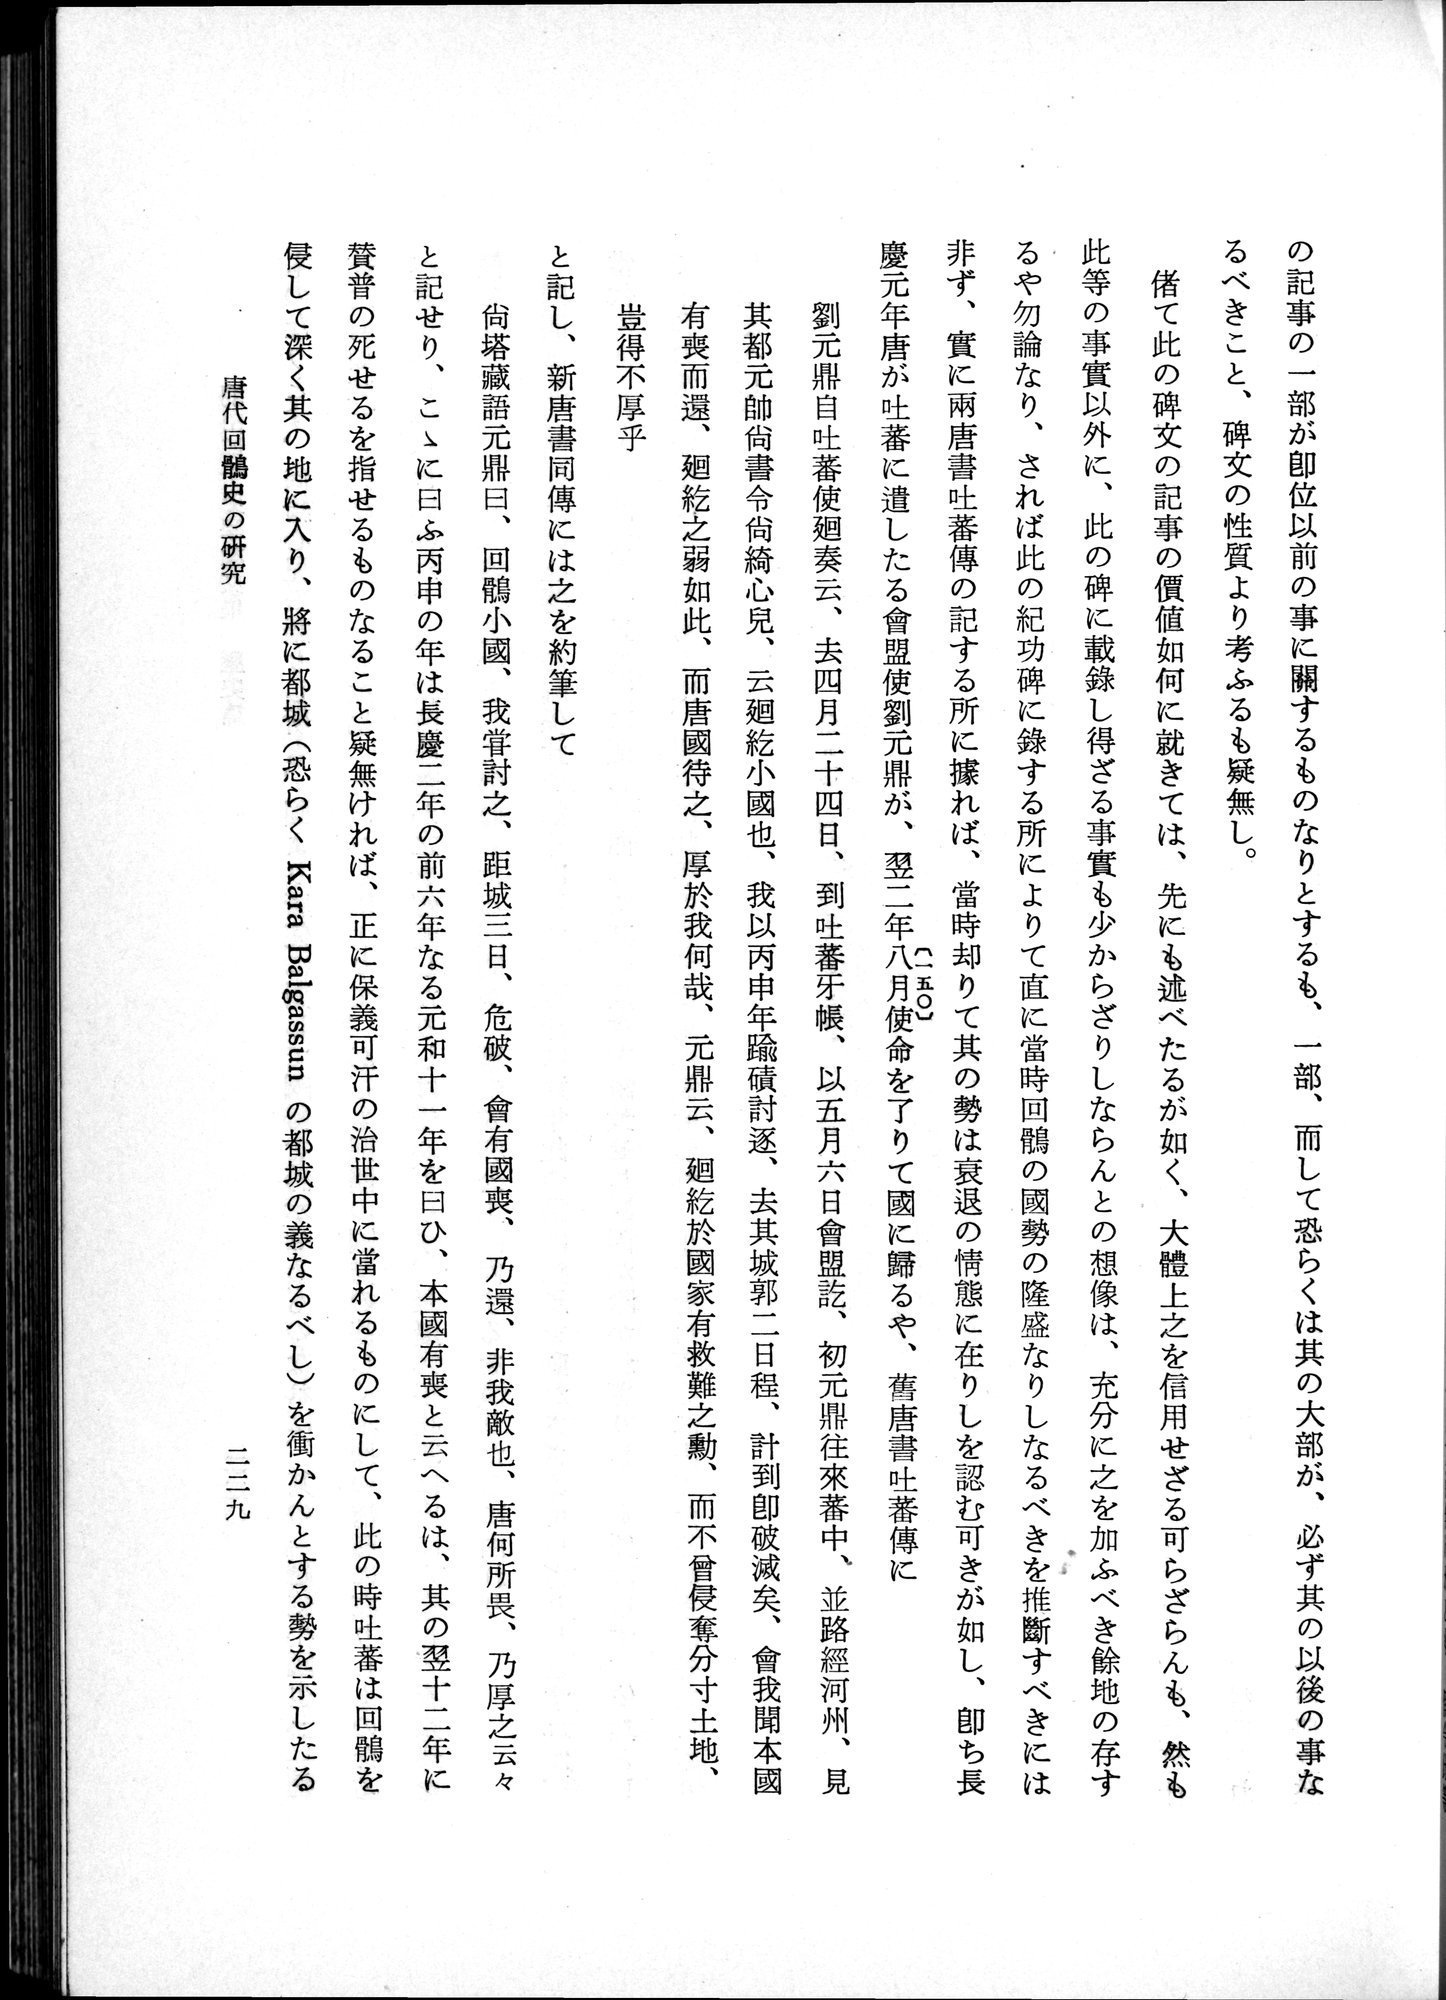 羽田博士史学論文集 : vol.1 / Page 267 (Grayscale High Resolution Image)